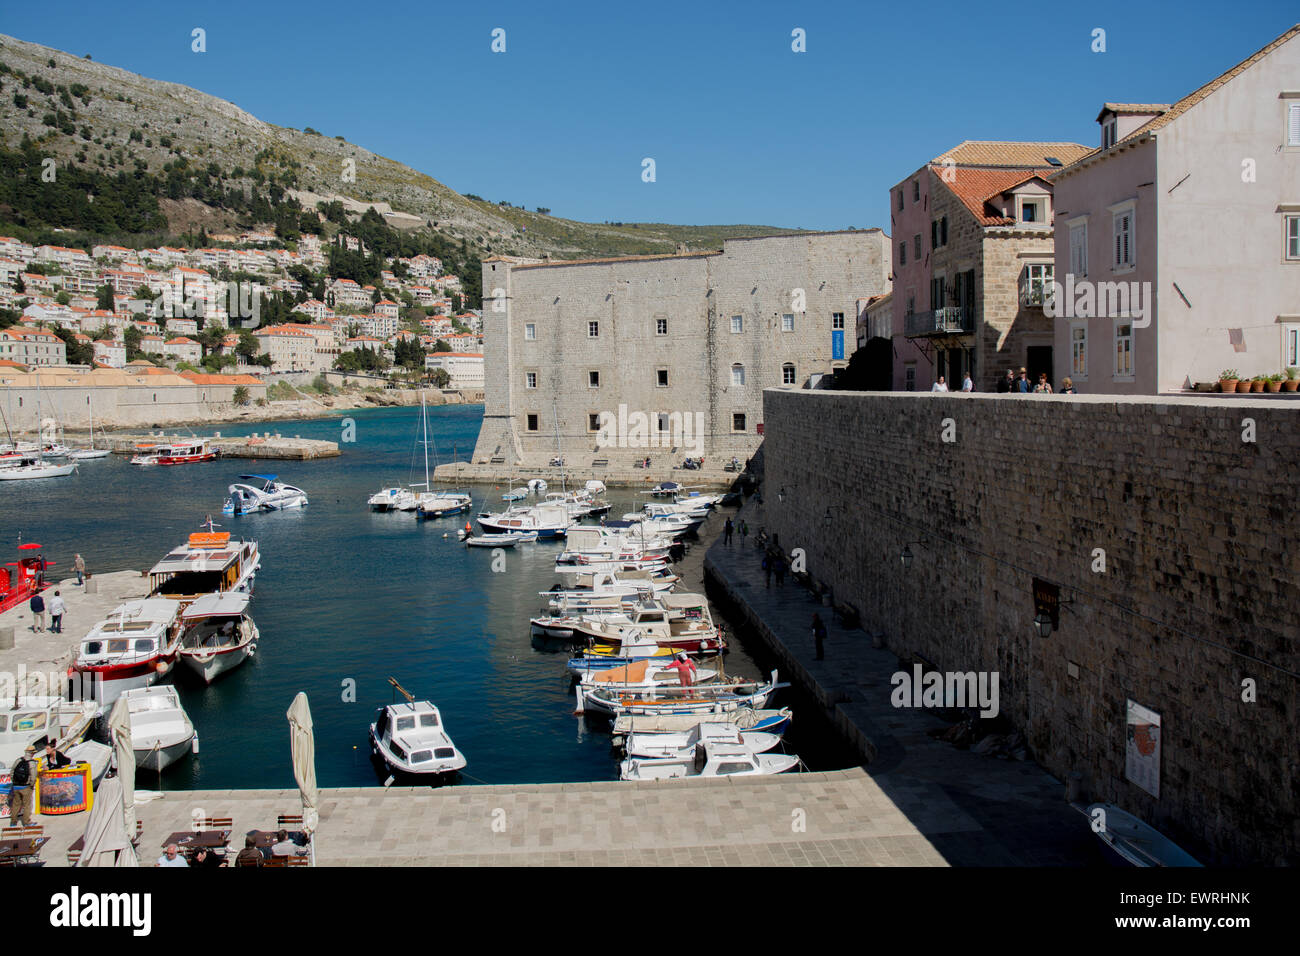 Vieux mur de ville à côté de port avec st. john's fort en arrière-plan, Dubrovnik, Croatie Banque D'Images